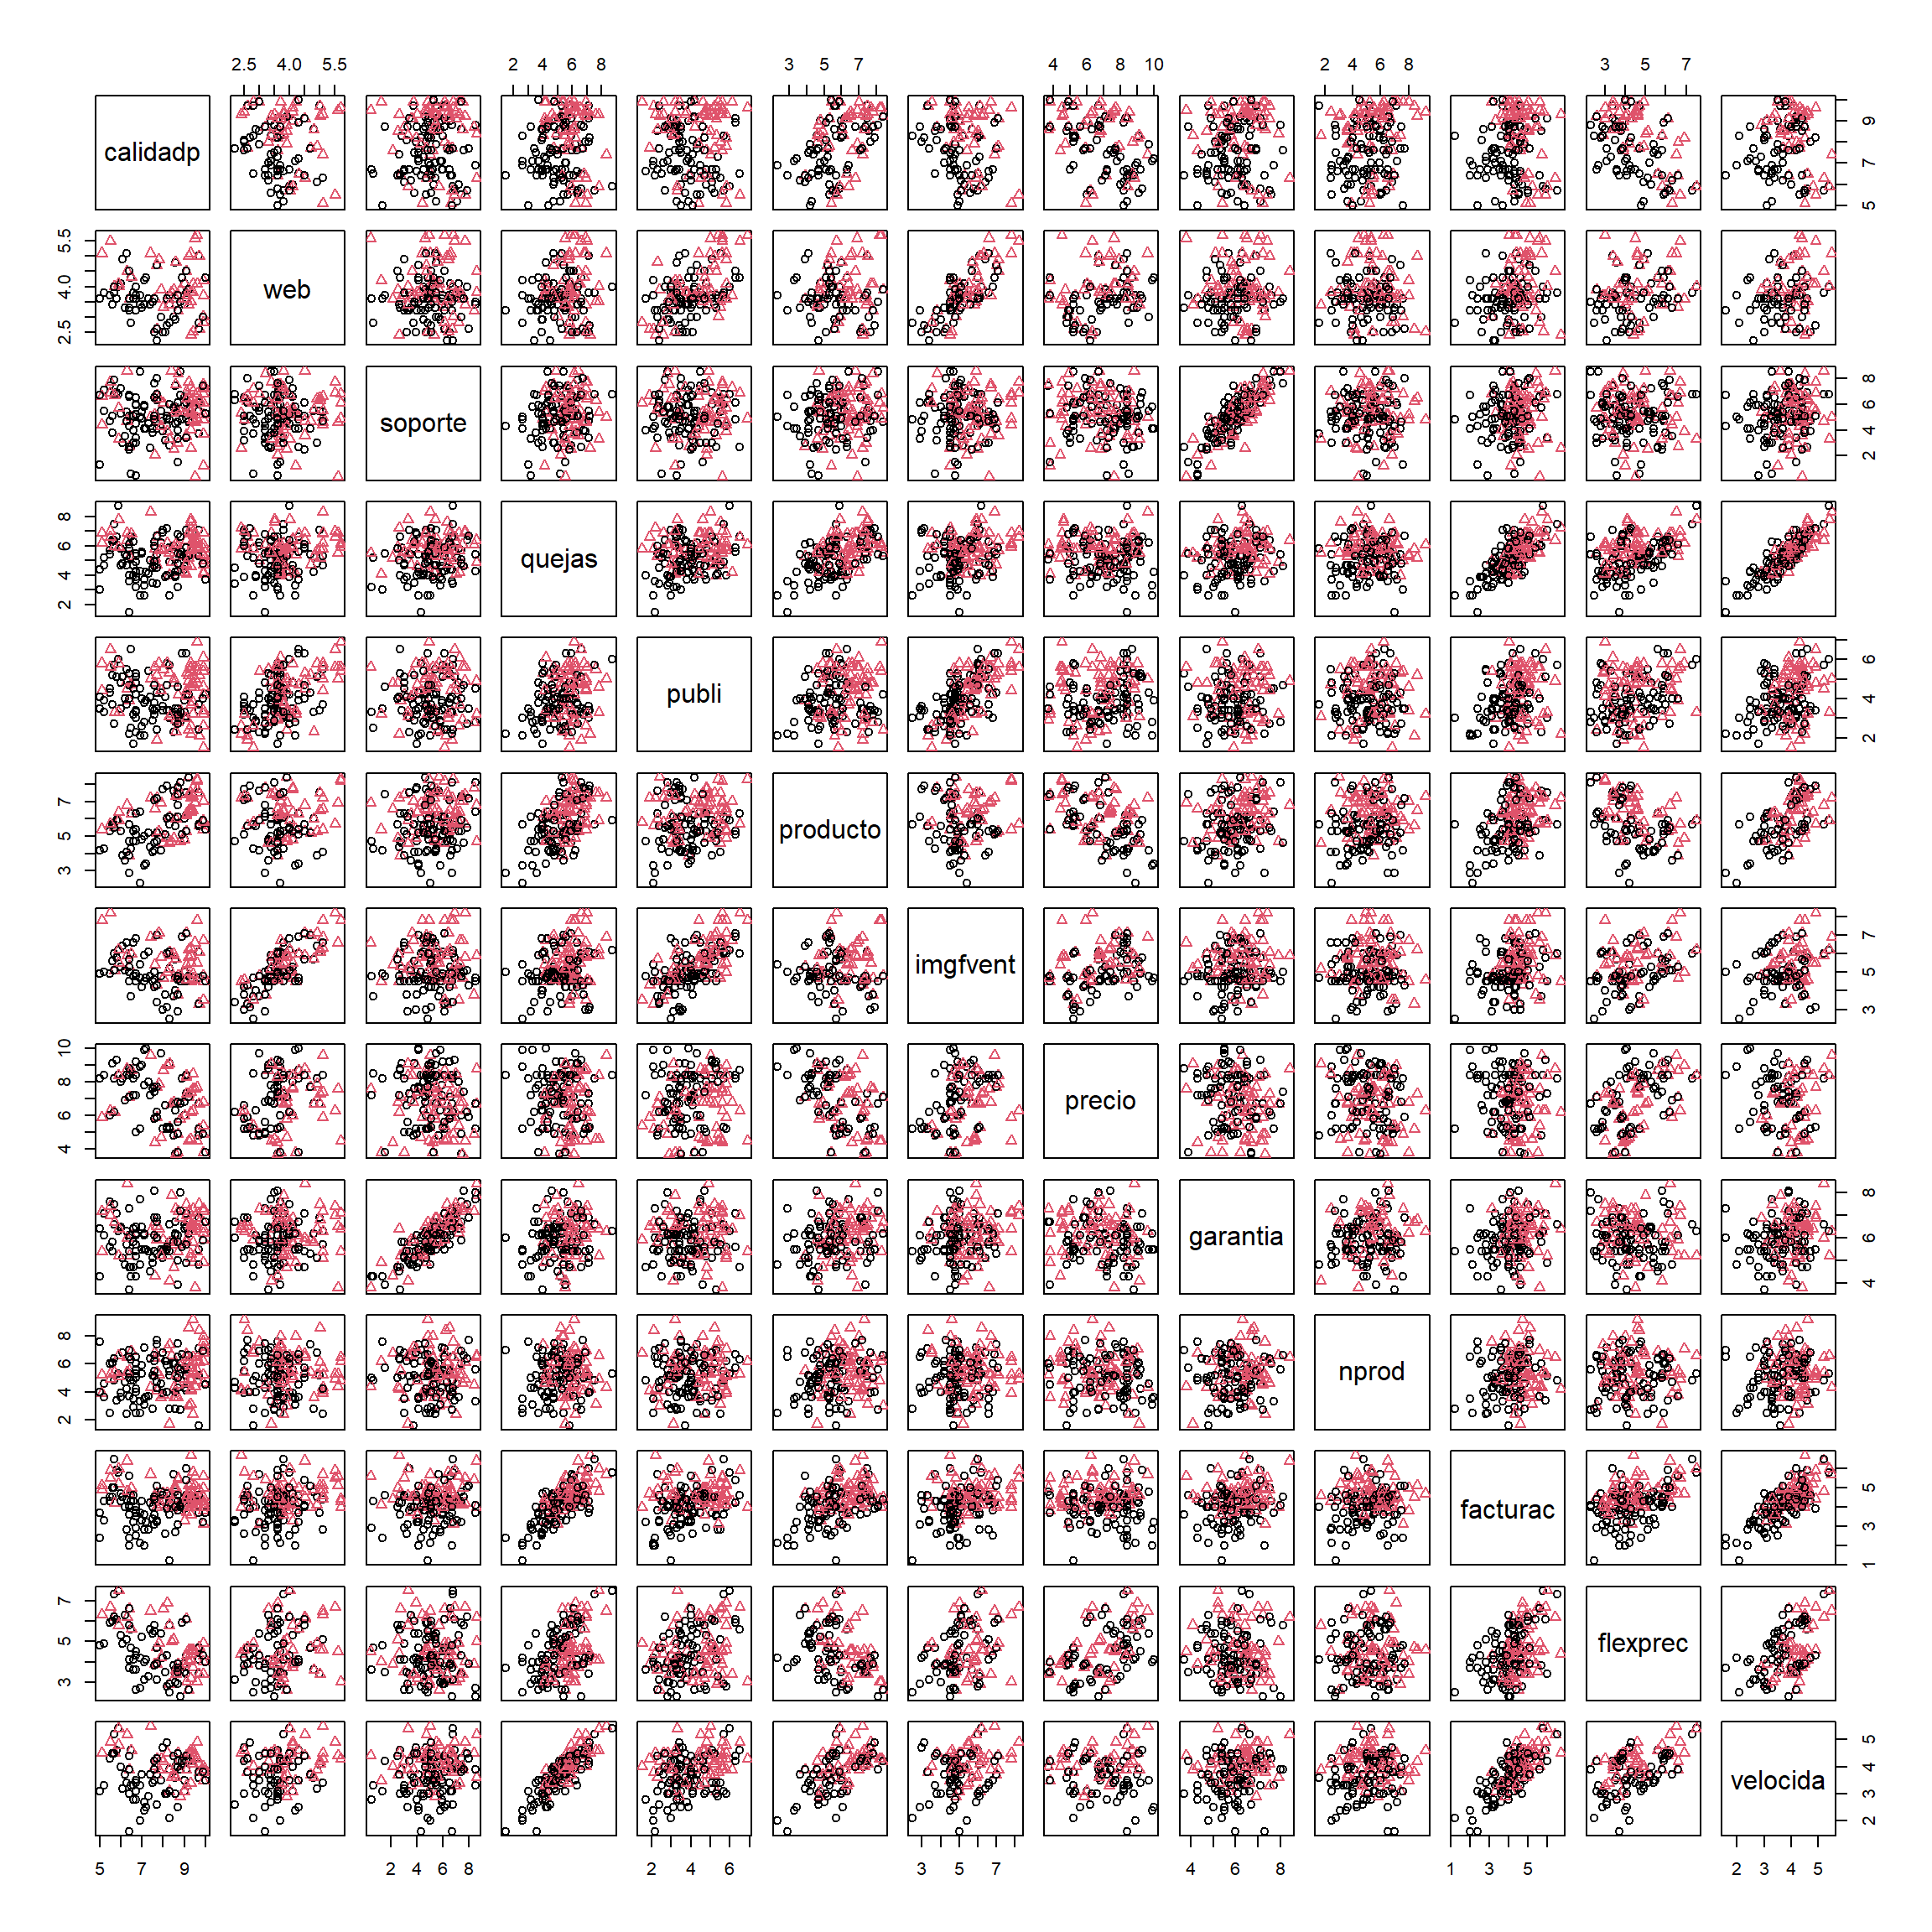 Gráfico de dispersión matricial, con colores y símbolos dependiendo de alianza.